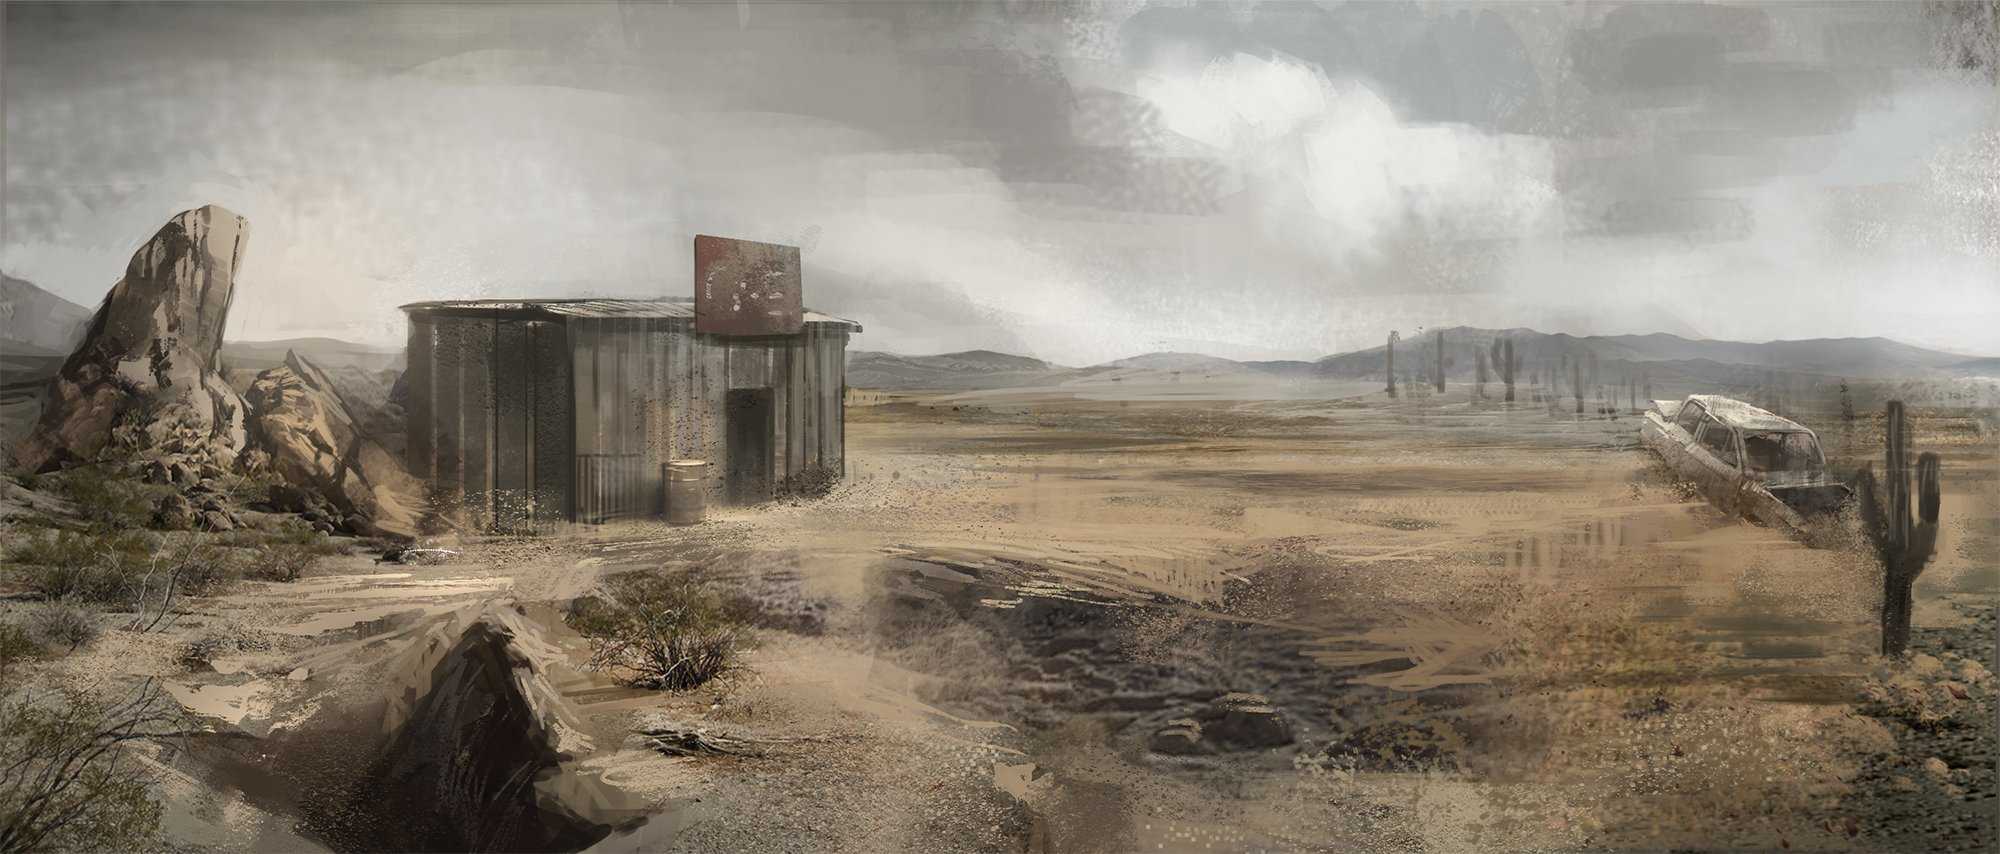 Fallout 4 wasteland фото 29